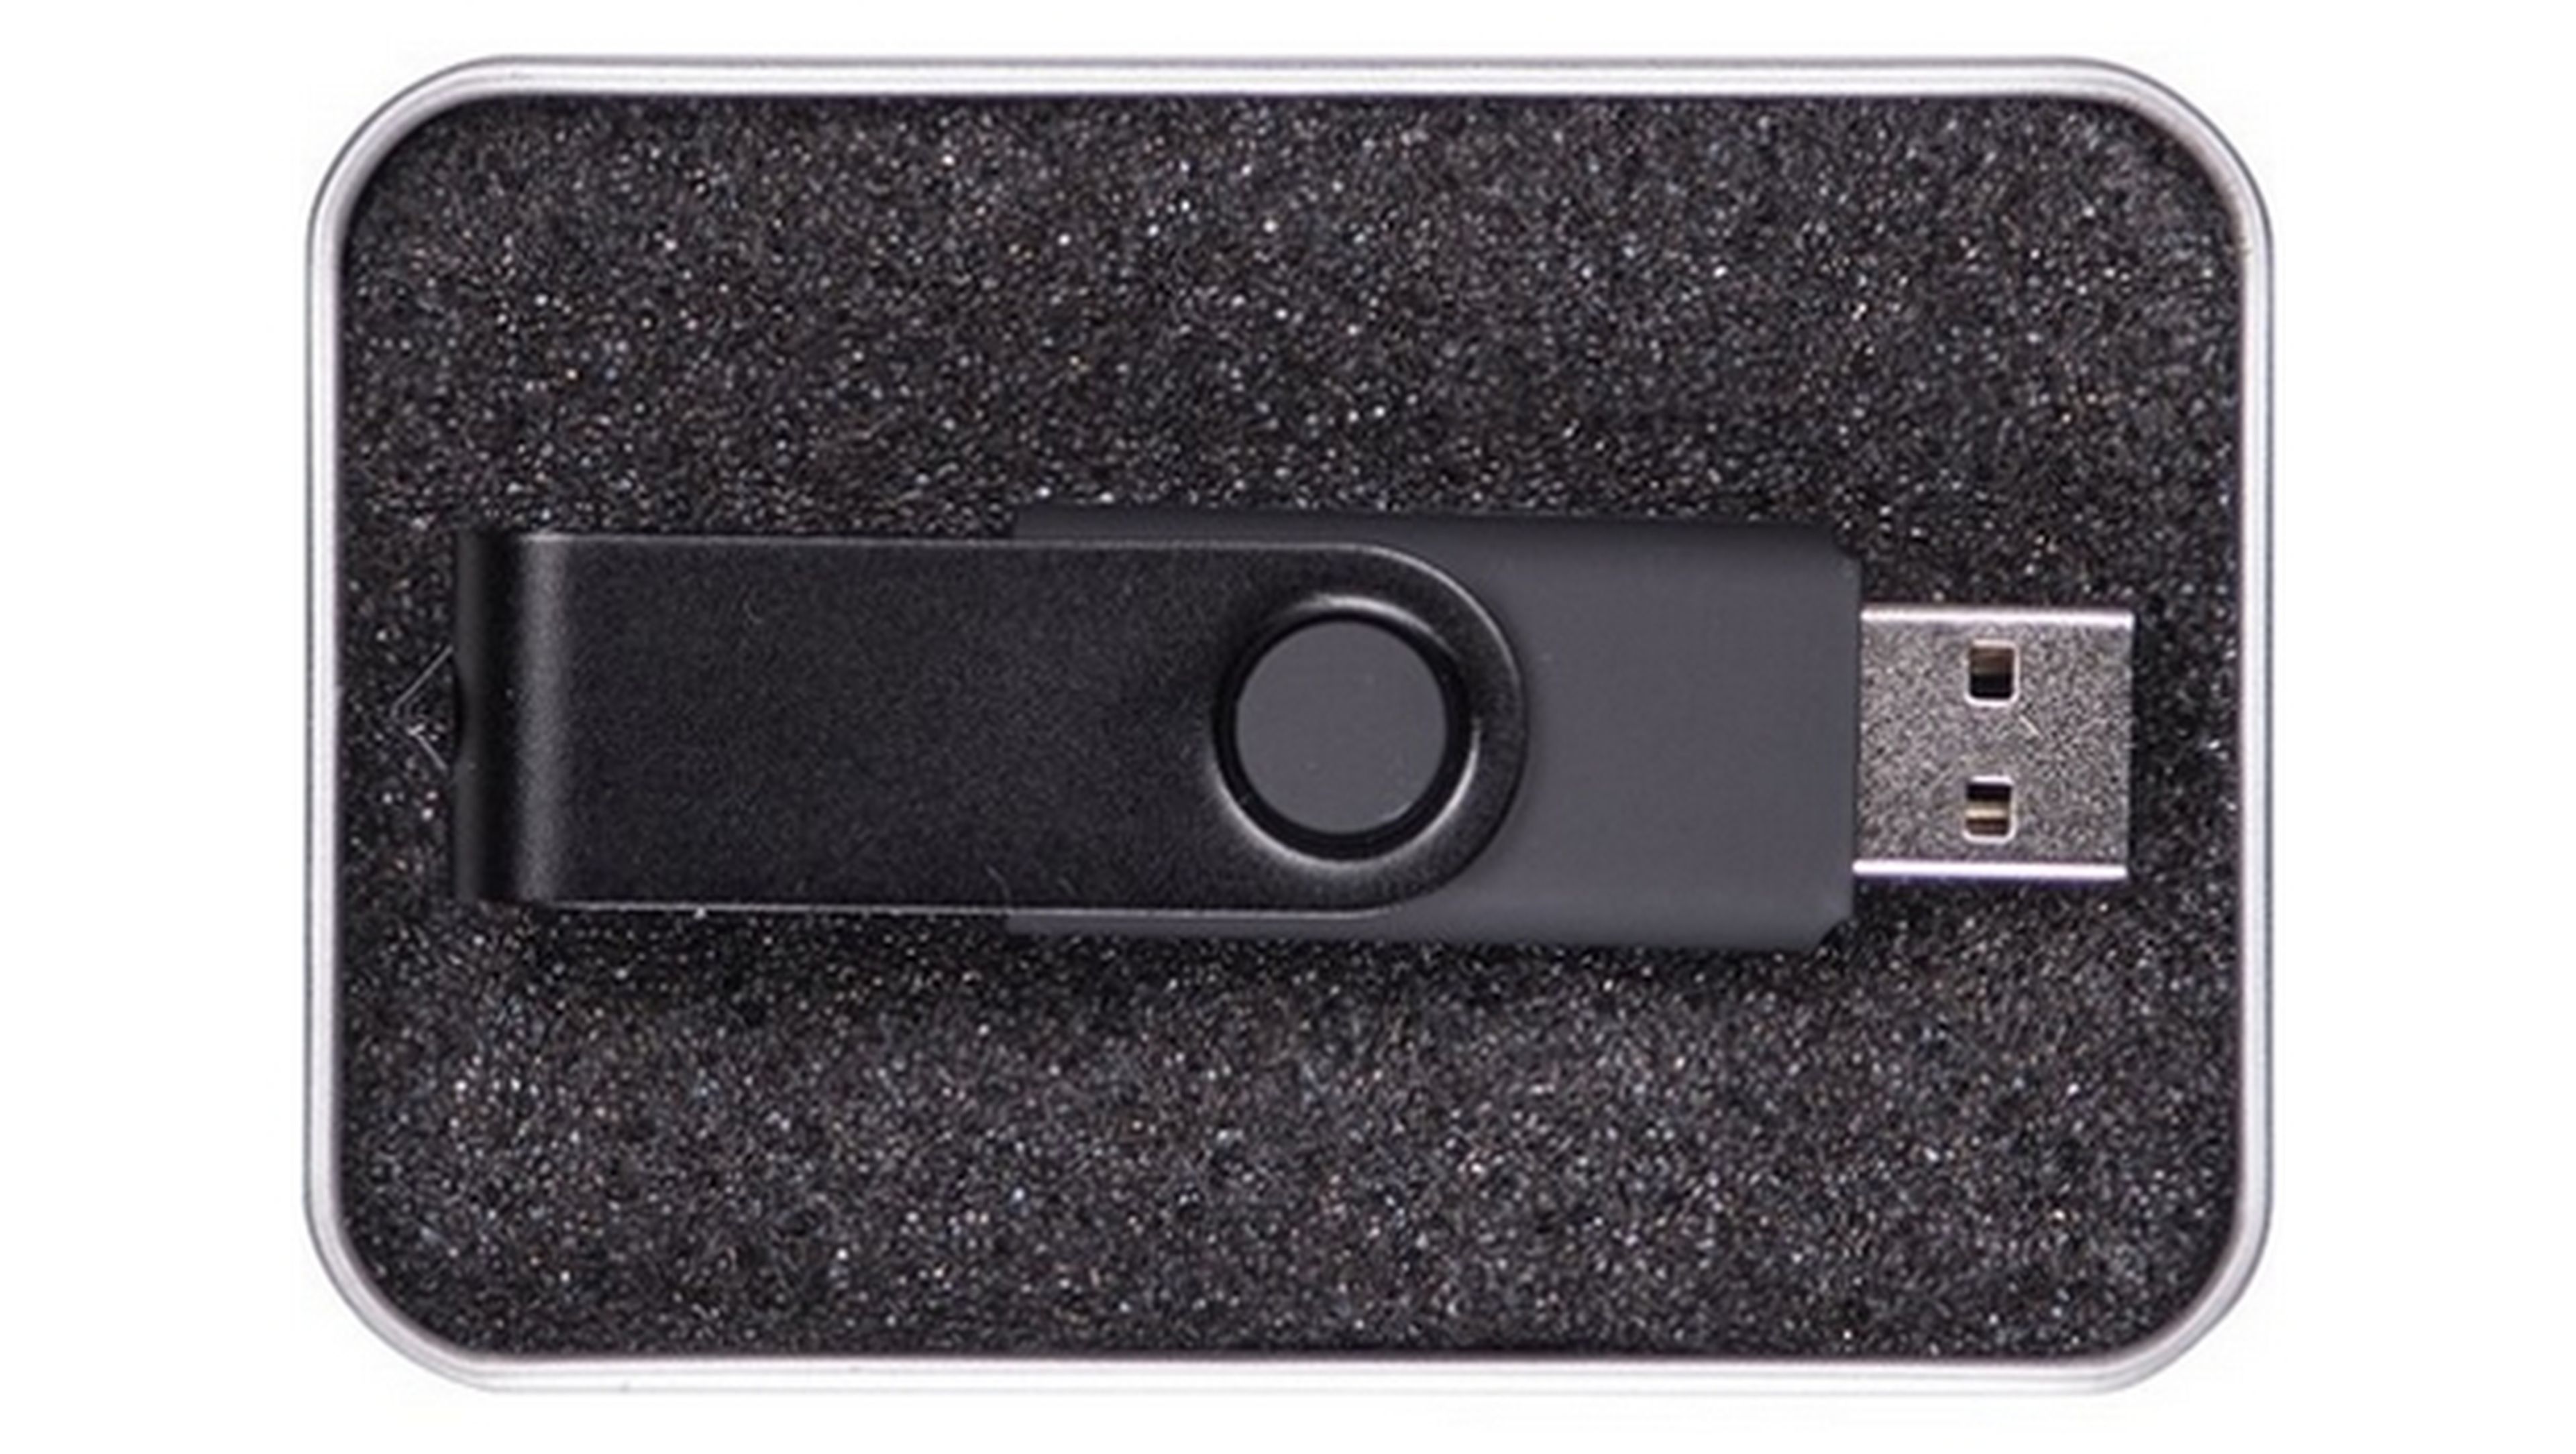 USB Killer 3.0, el pendrive que electrocuta PCs aún más letal